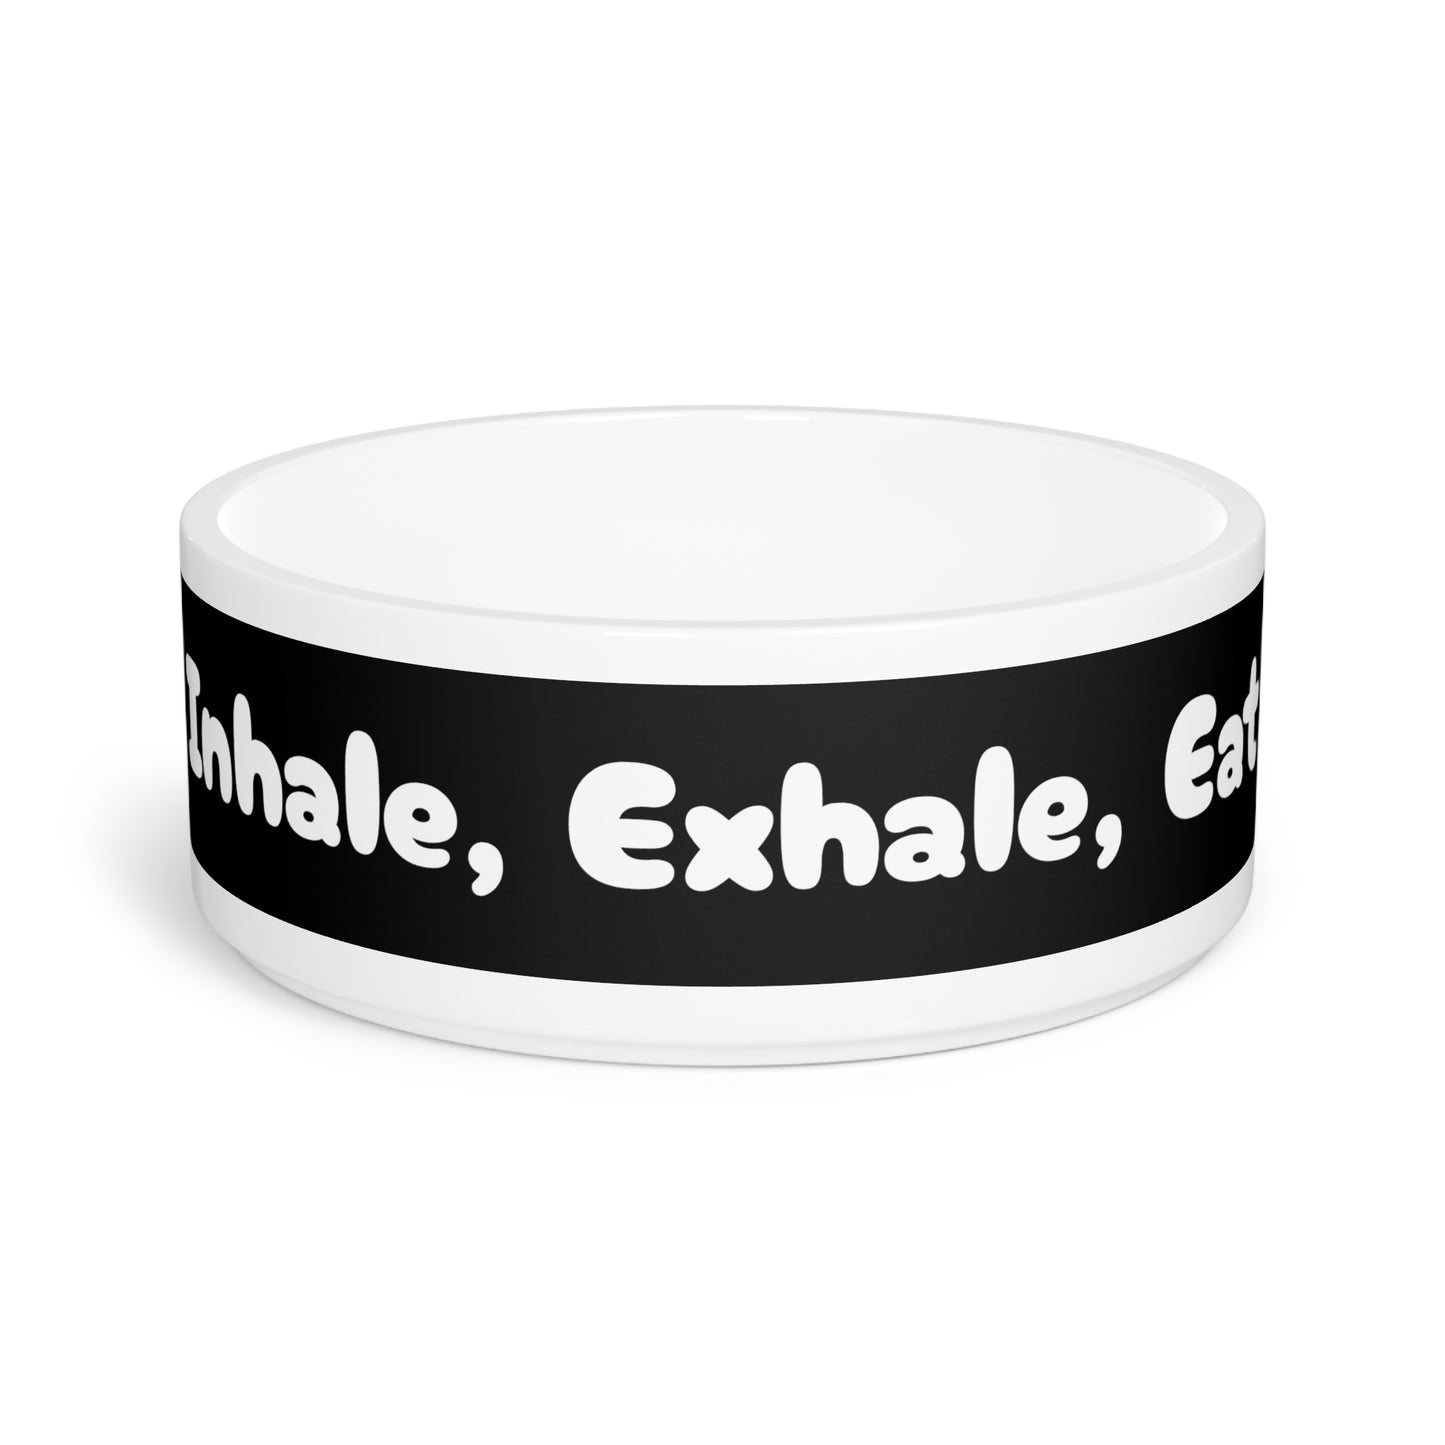 Pet Bowl Inhale, Exhale, Eat - Expressive DeZien 